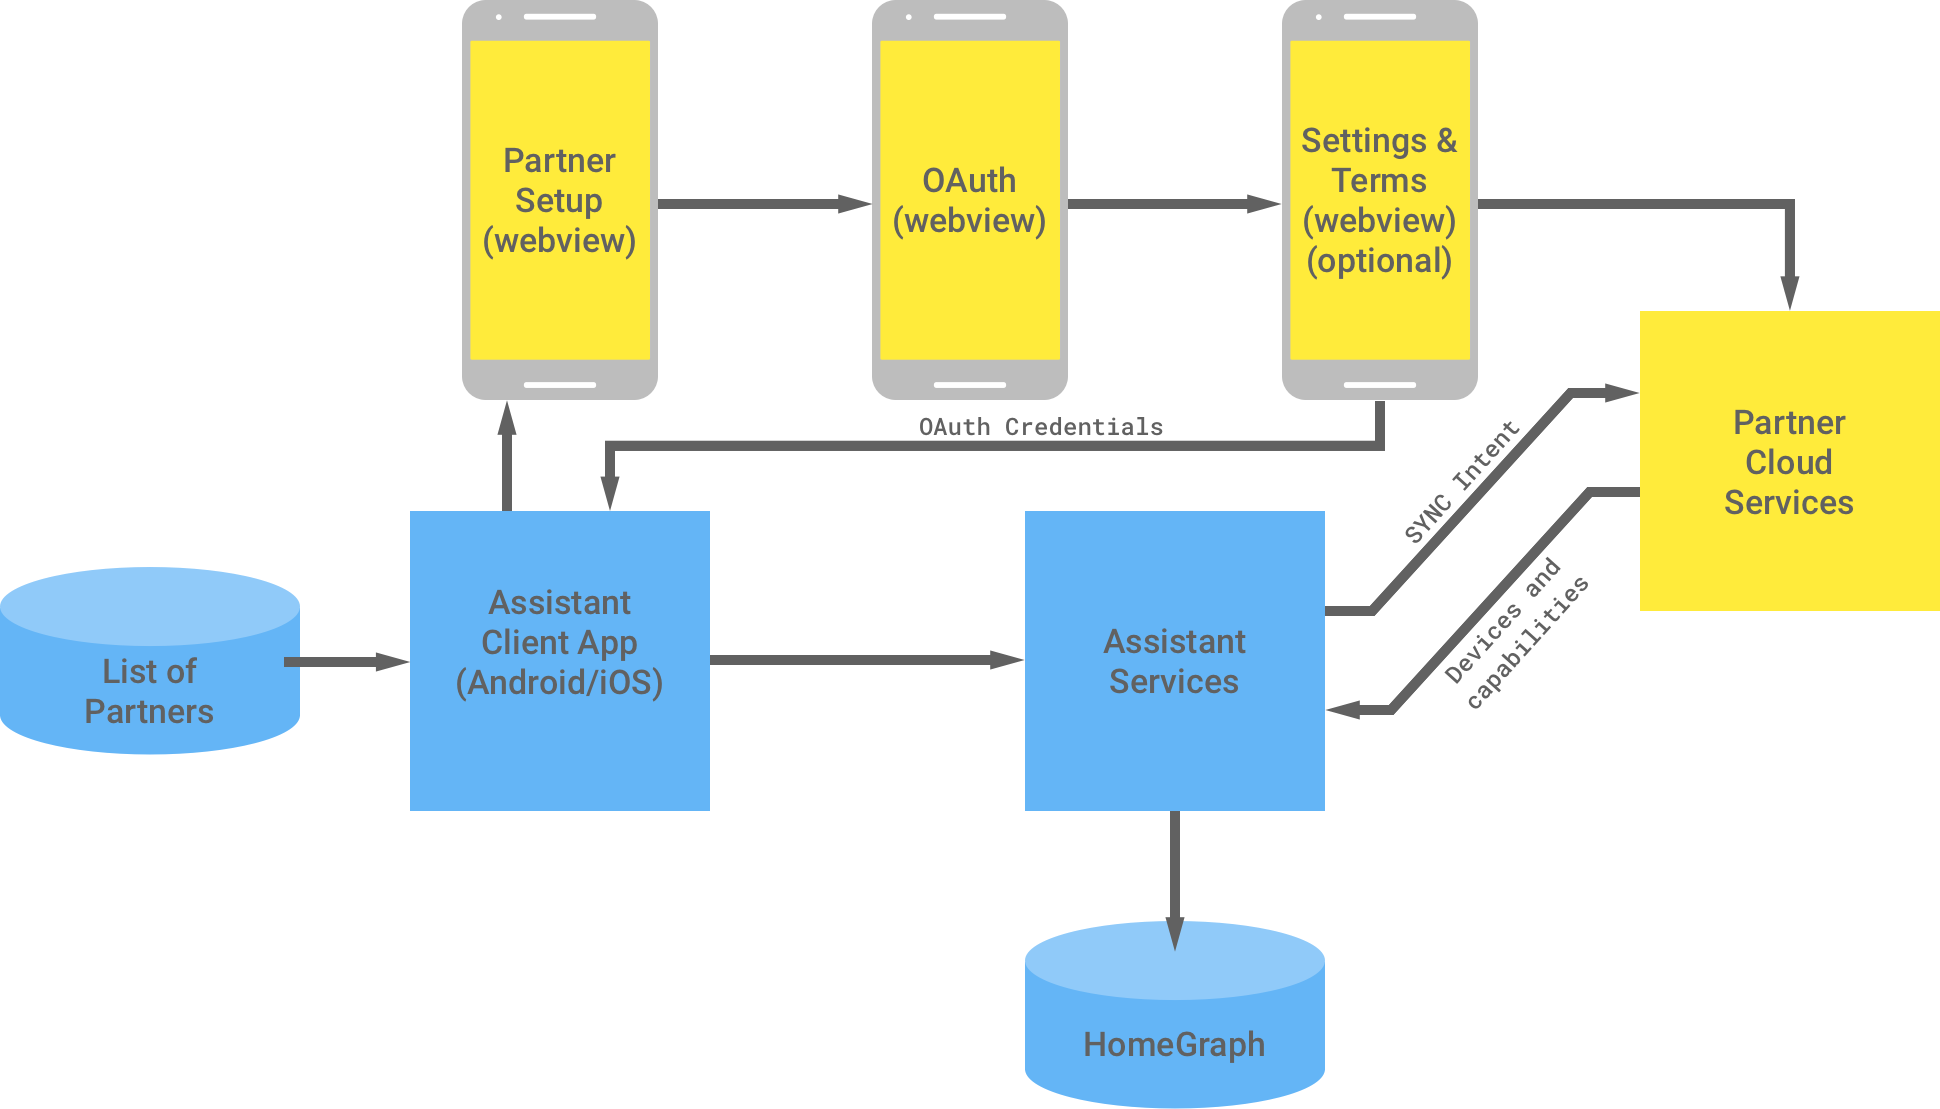 Esta figura mostra a interação entre a infraestrutura do Google e a infraestrutura do parceiro. Da infraestrutura do Google, há uma lista de parceiros disponíveis para o app cliente do Assistente que, em seguida, flui para a infraestrutura do parceiro para concluir a autenticação OAuth. A autenticação OAuth no lado do parceiro é o WebView de configuração do parceiro, o WebView do OAuth, os termos e configurações opcionais e os serviços de nuvem do parceiro. Em seguida, a infraestrutura do parceiro retorna as credenciais do OAuth para o app cliente do Assistente. Os serviços de nuvem do parceiro enviam dispositivos e recursos disponíveis para os serviços do Assistente, que armazenam as informações no Home Graph.